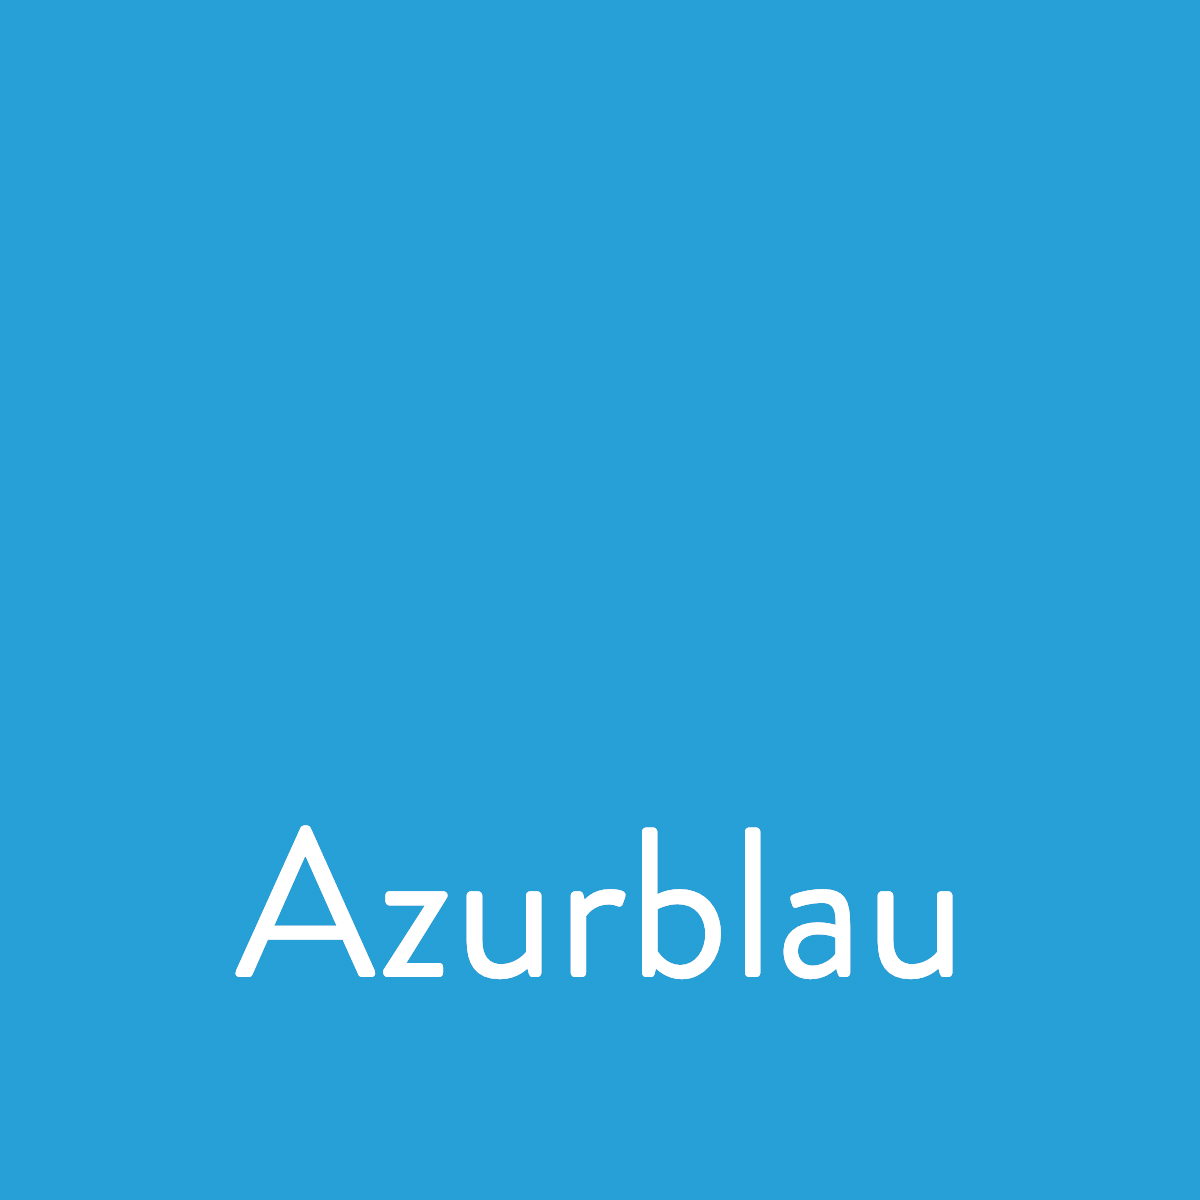 Stampin Up Farberneuerung - Die neuen Farben Stempelmami Azurblau